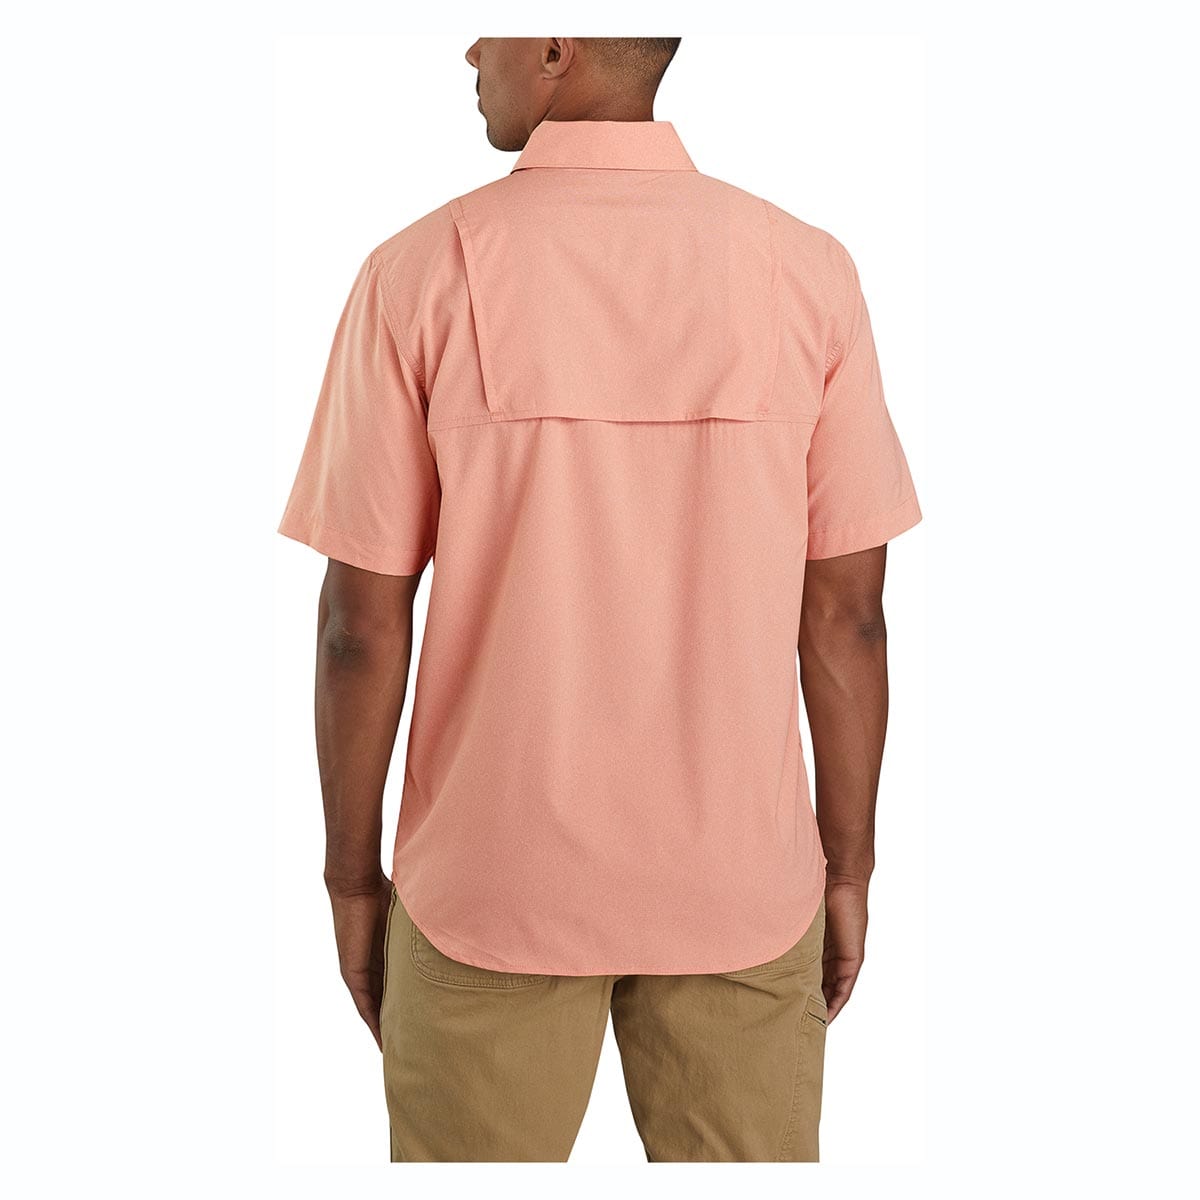 Carhartt Force Relaxed Fit Lightweight Short-Sleeve Shirt